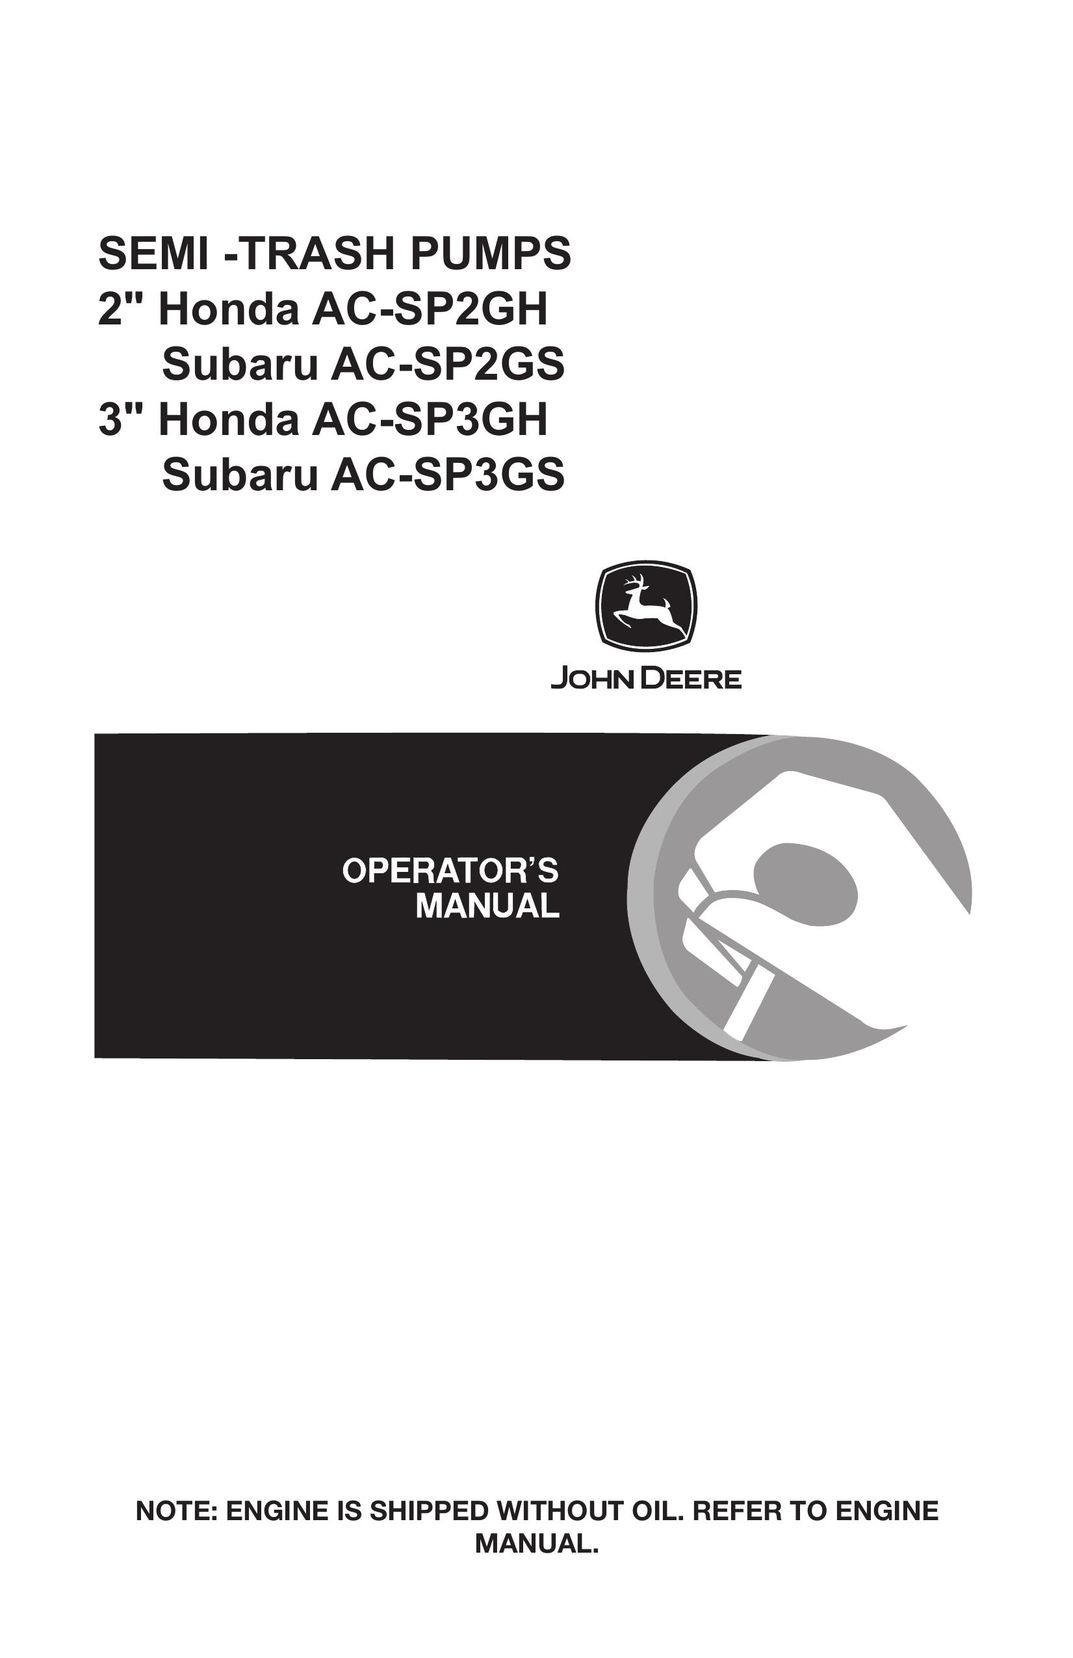 John Deere AC-SP2GH Water Pump User Manual